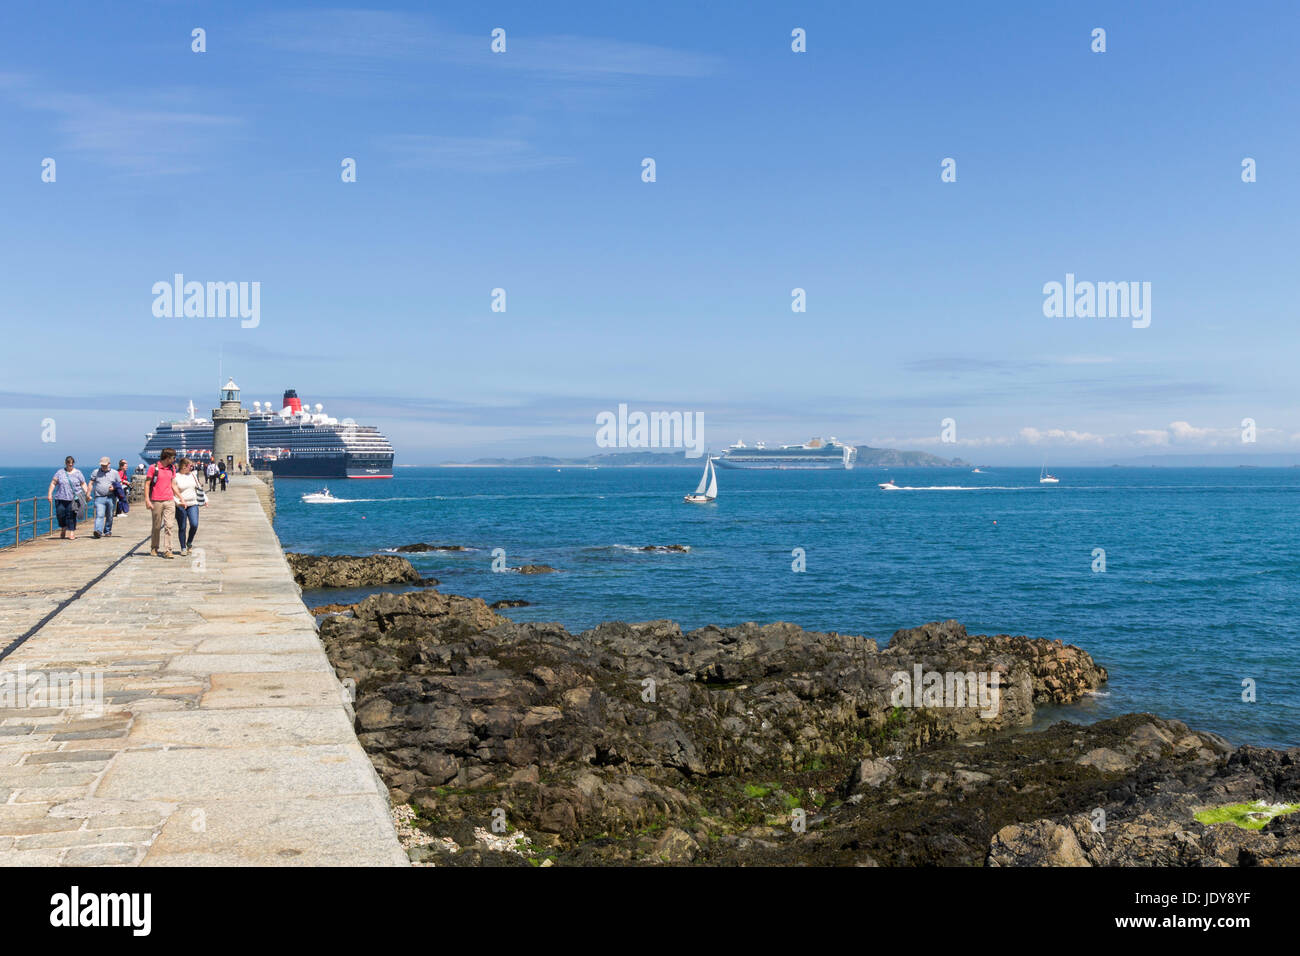 Touristen schlendern entlang Burg Wellenbrecher, Saint Peter Port, Guernsey. Ein Kreuzfahrtschiff ist Offshore verankert. Stockfoto